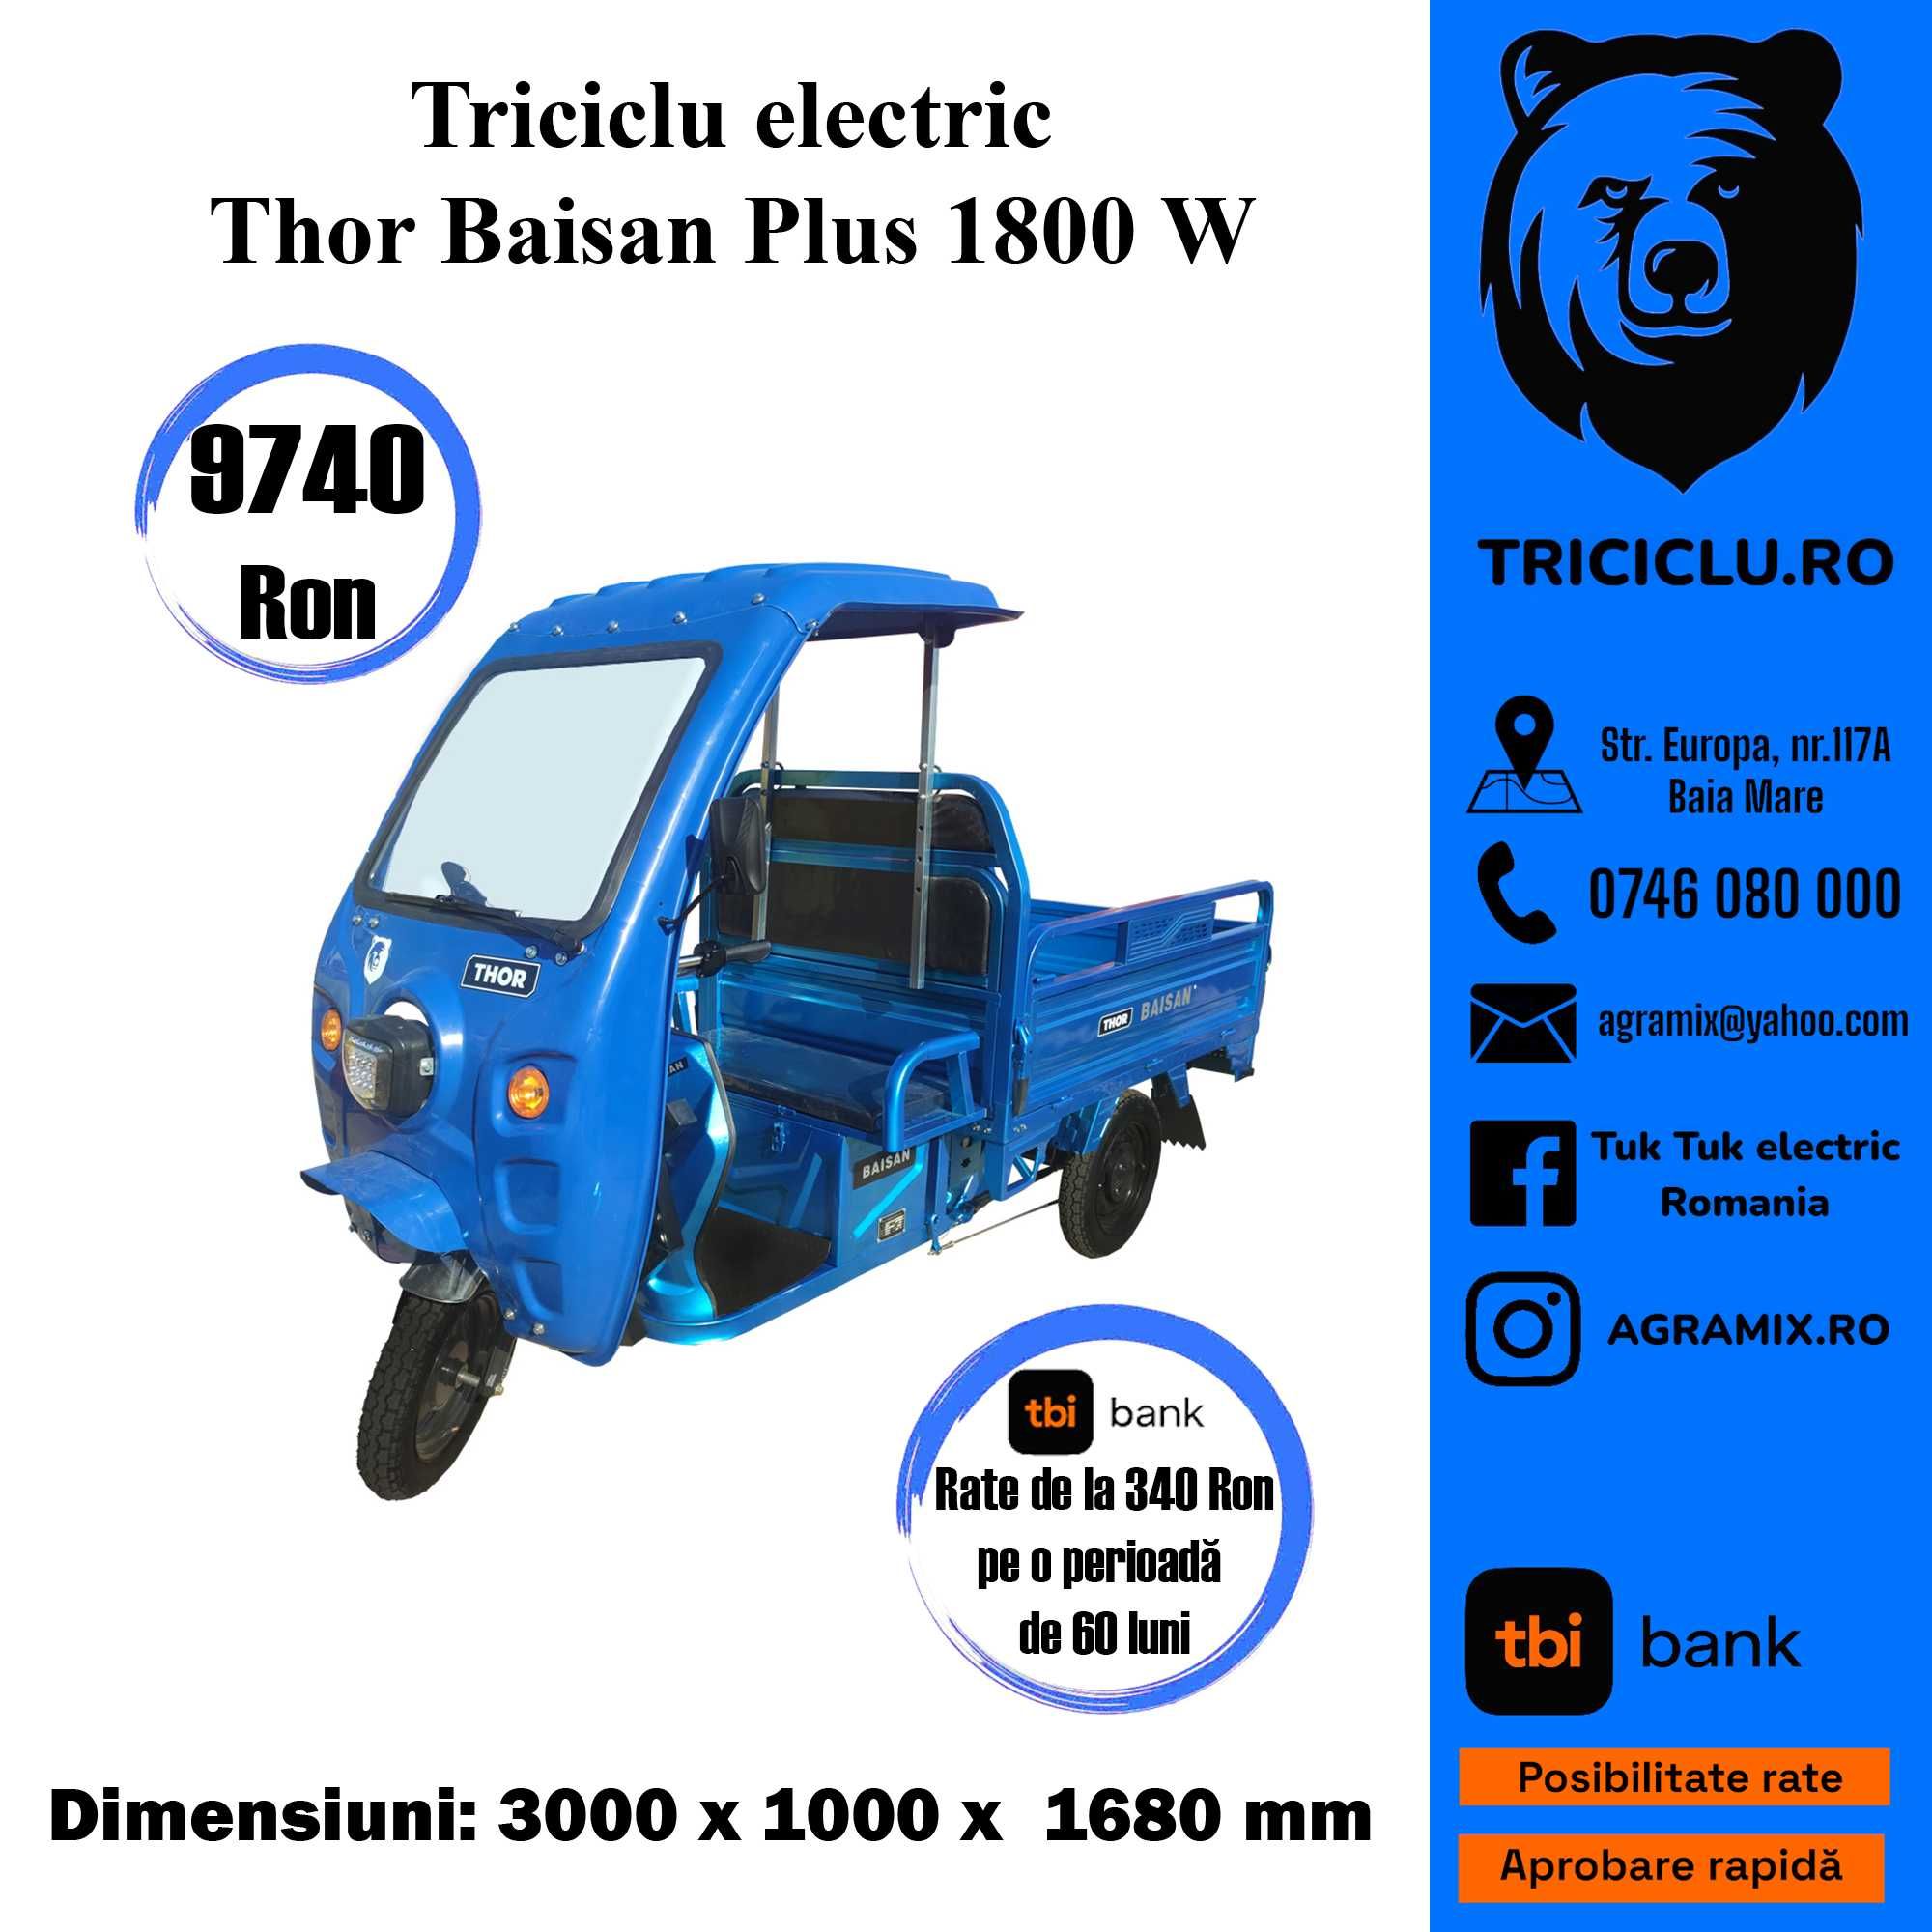 Thor Baisan triciclu electric 1800W, Agramix